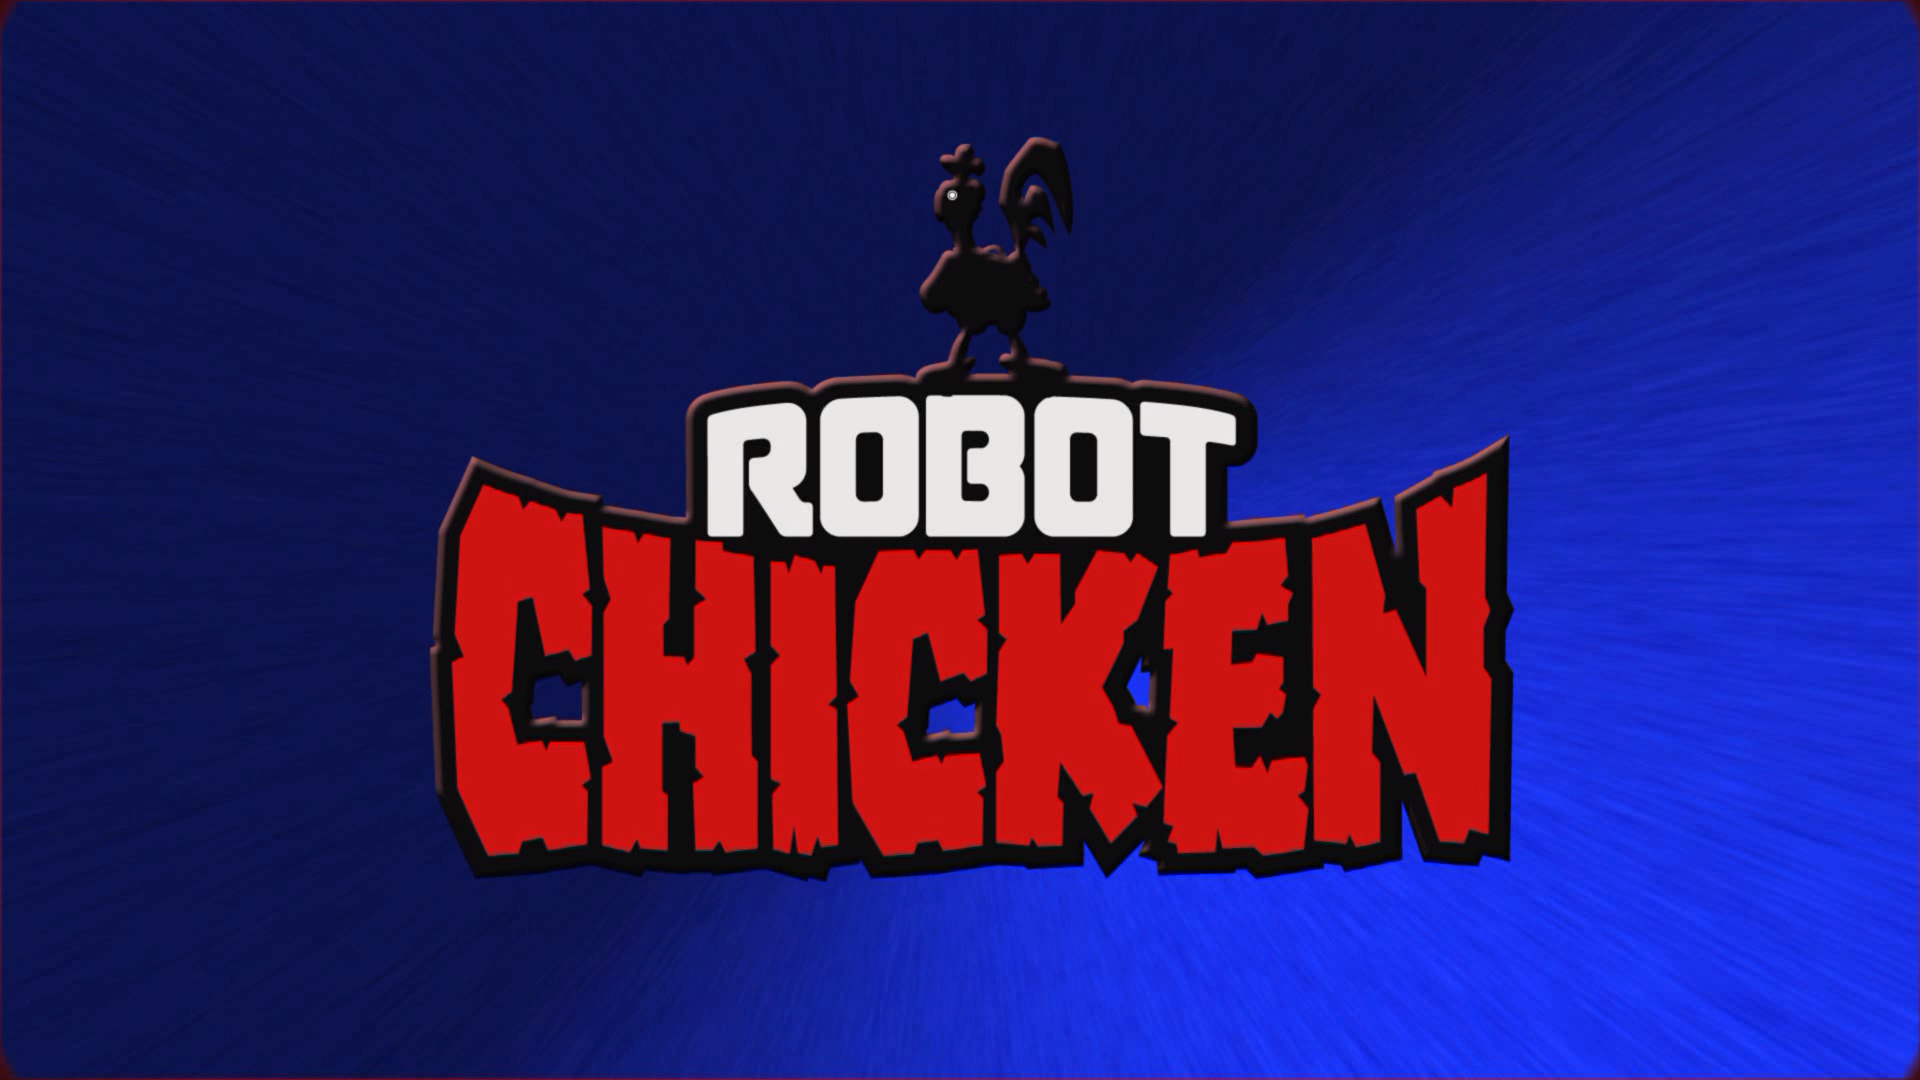 Inter Robot Chicken Co Creator Matthew Senreich